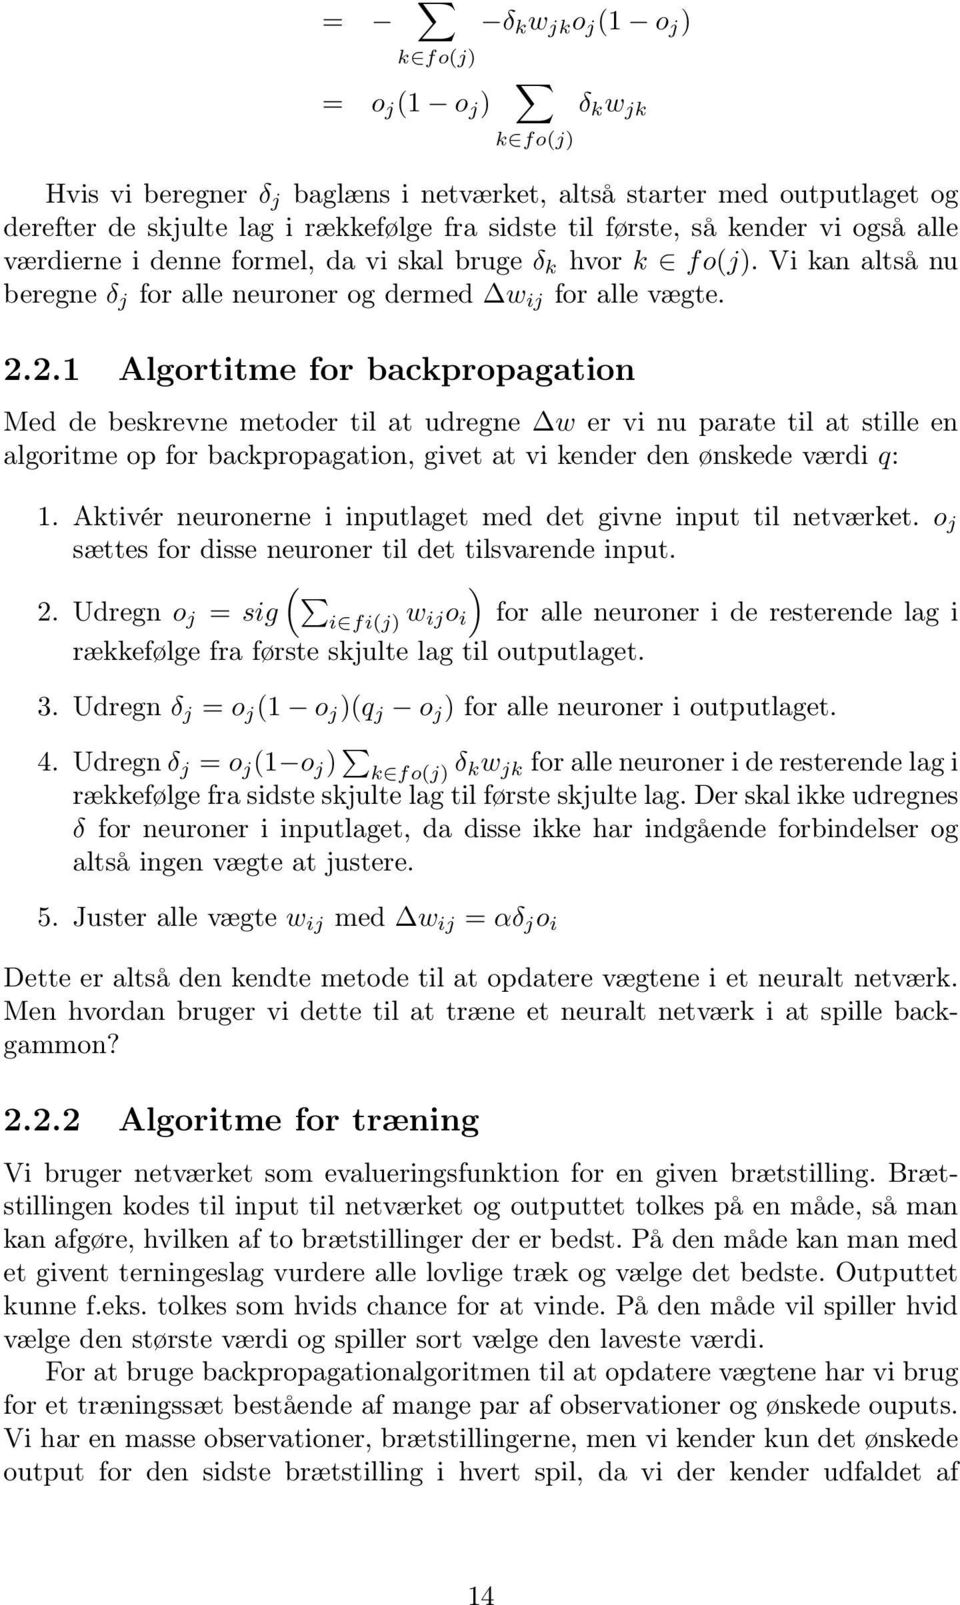 2.1 Algortitme for backpropagation Med de beskrevne metoder til at udregne w er vi nu parate til at stille en algoritme op for backpropagation, givet at vi kender den ønskede værdi q: 1.